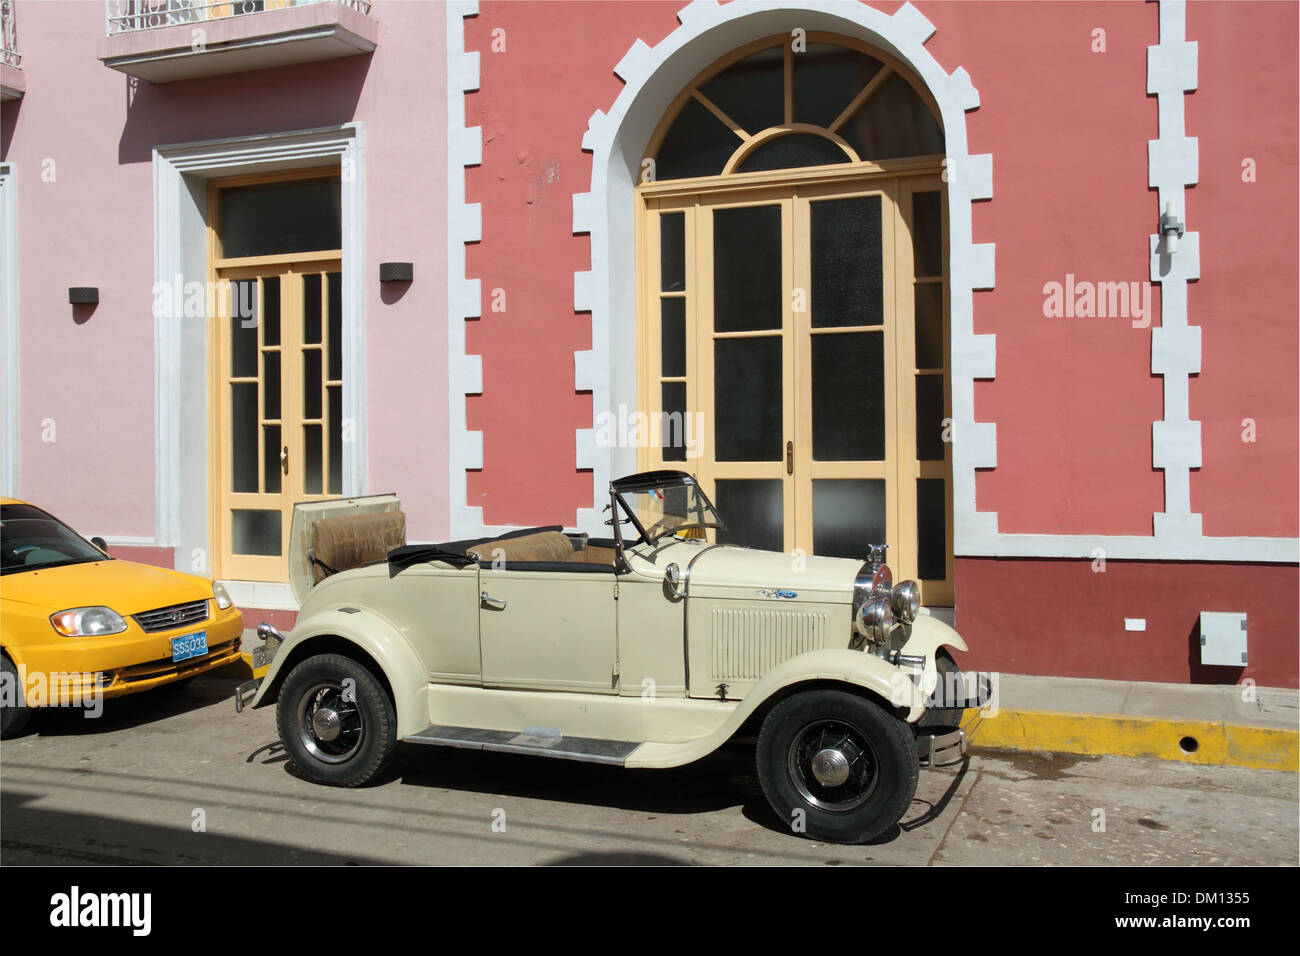 1930 Fiat 514 coupé, Parque Céspedes, Trinidad, la province de Sancti Spiritus, Cuba, mer des Caraïbes, l'Amérique centrale Banque D'Images